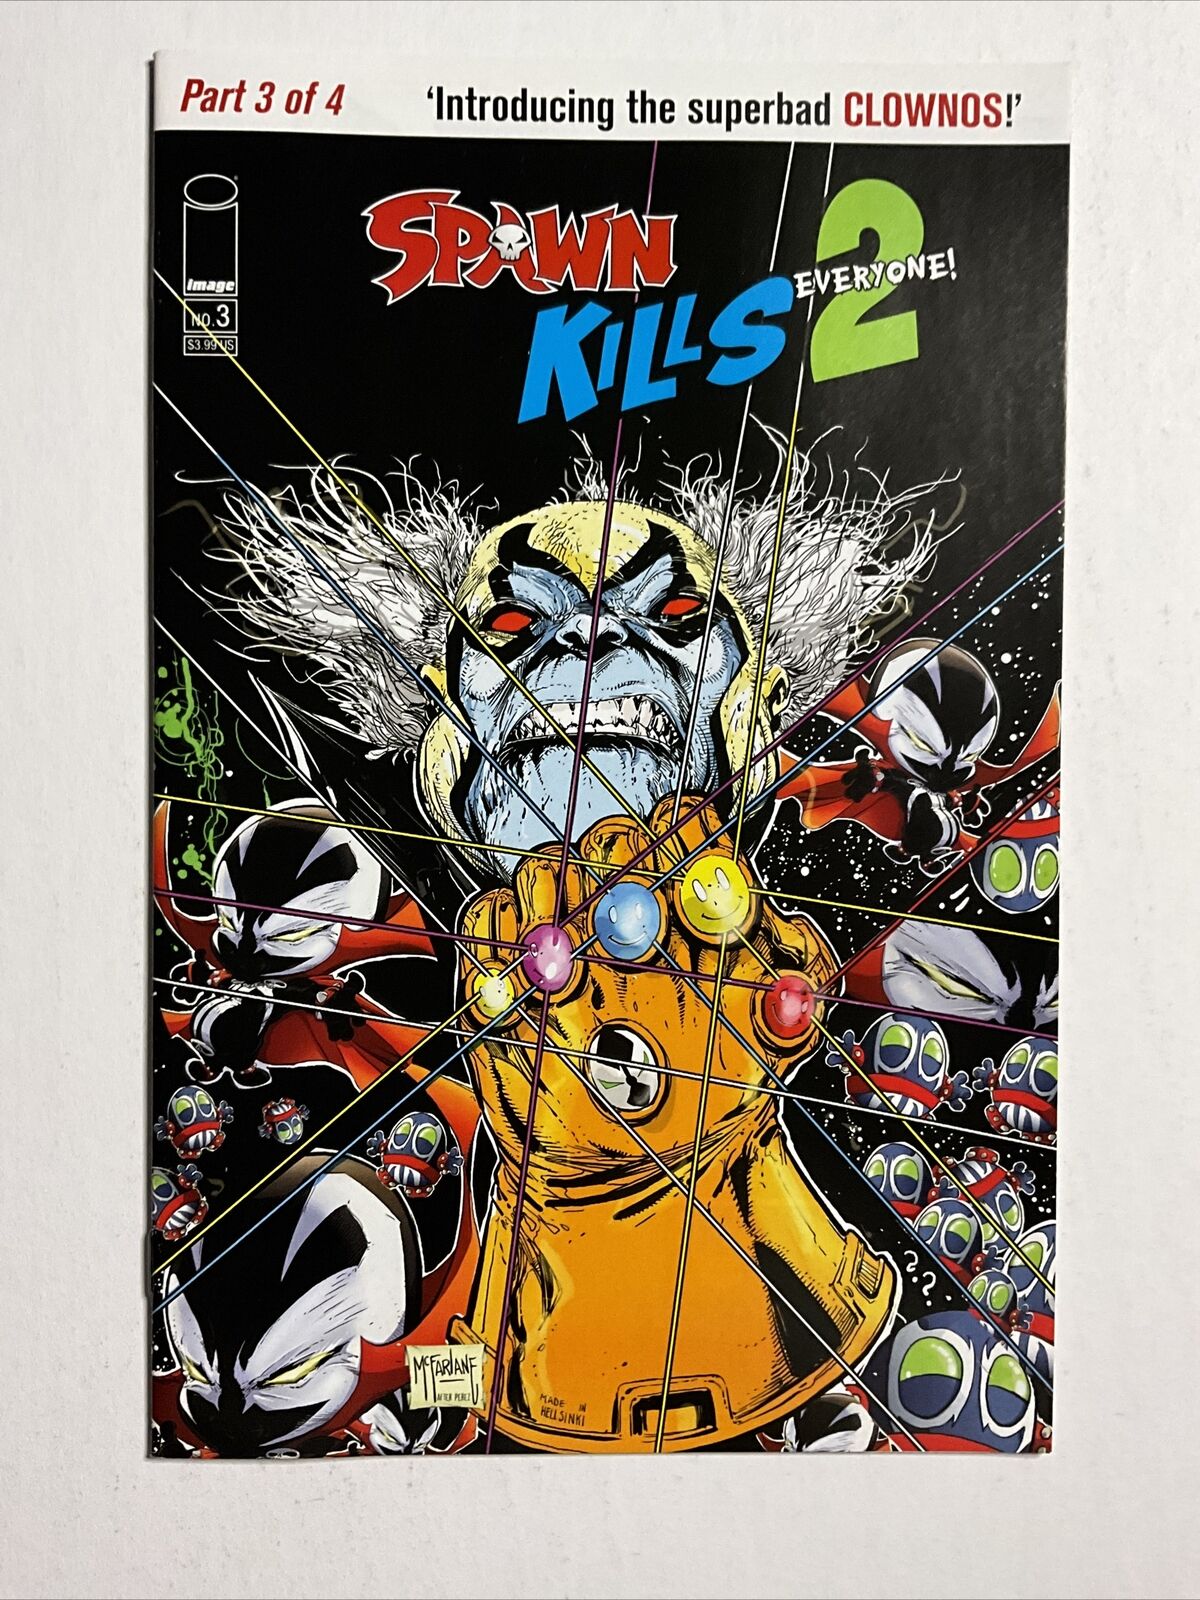 Spawn Kills Everyone Too 2 #3 (2019) 9.4 NM Infinity Gauntlet Homage Variant